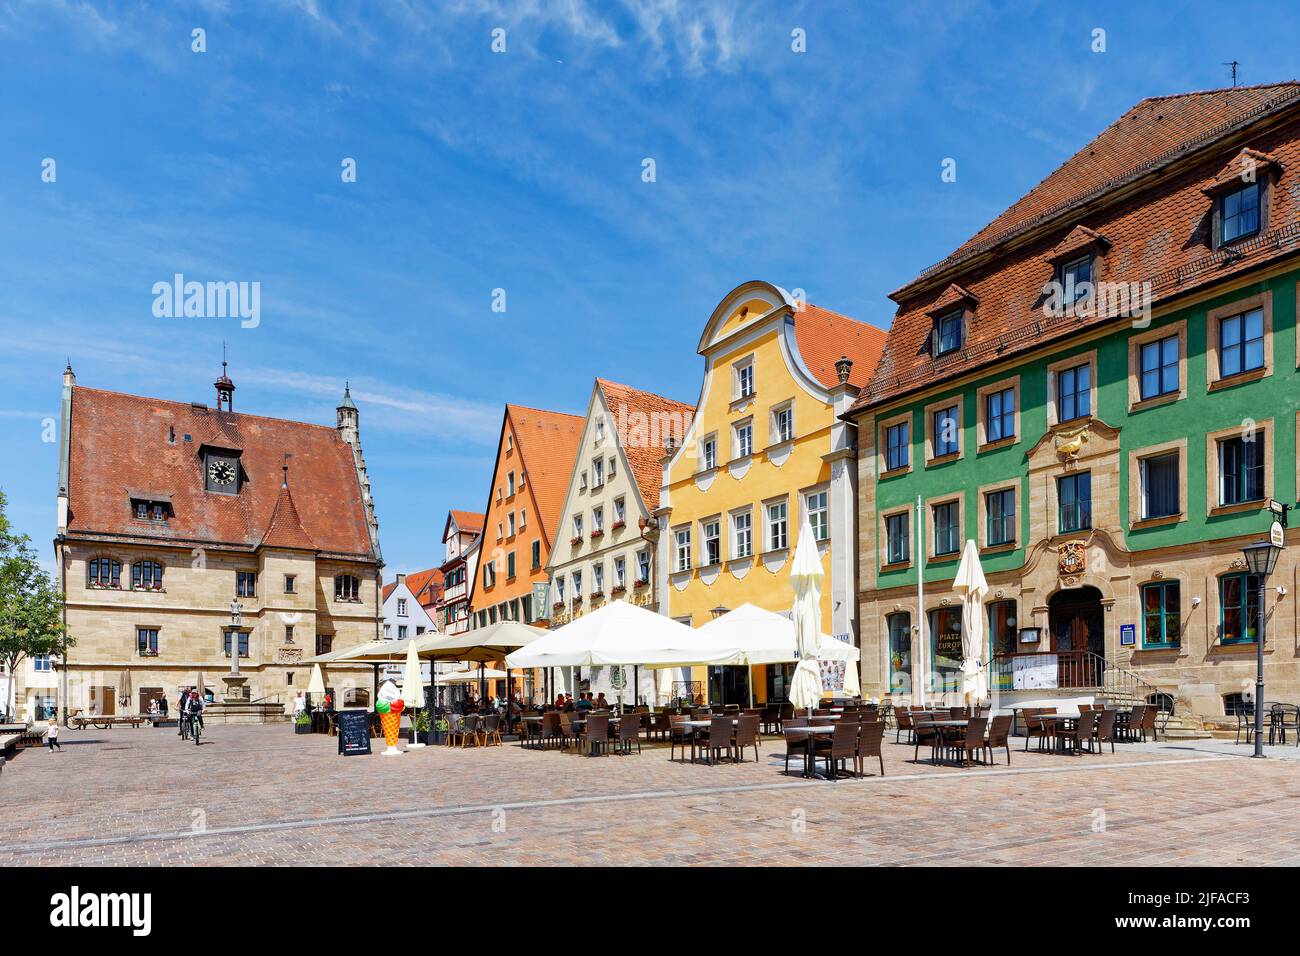 Links, altes Rathaus, erbaut 1470, 1476, Uhr, Gotik, Schweppermannsbrunnen, erbaut 1548 oder 1549, rechte Stadthäuser, Haus rechts Goldene Gans 1792 Stockfoto